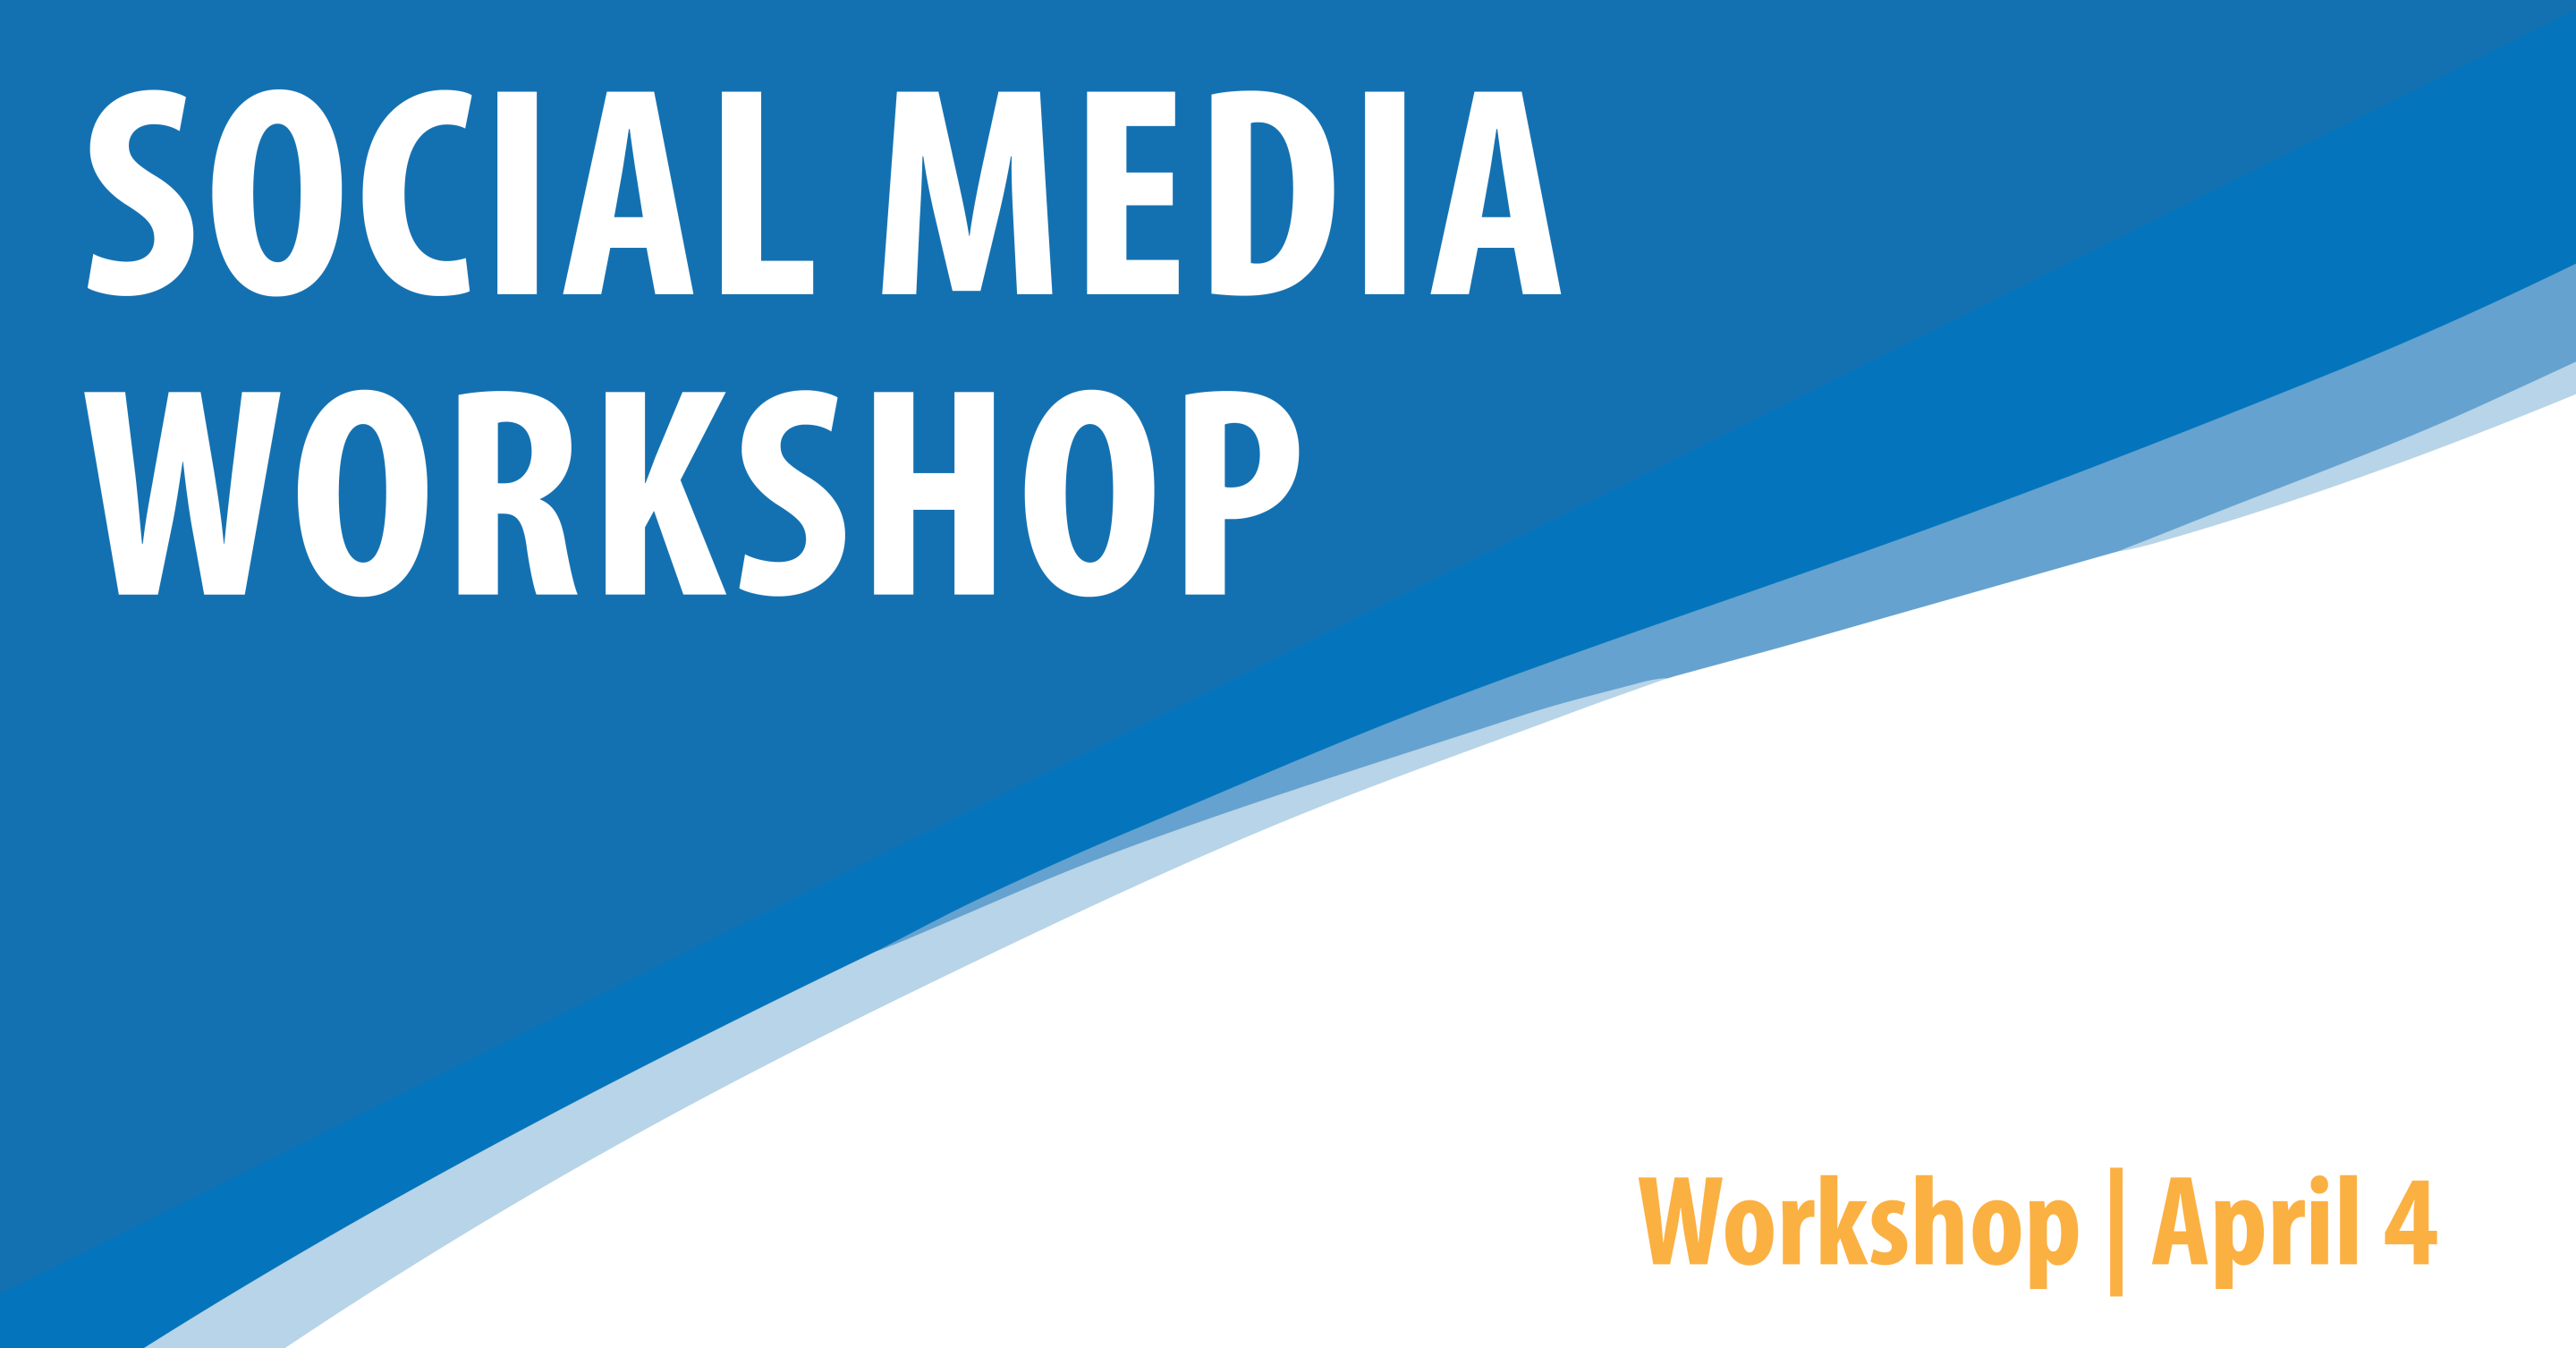 Social Media Workshop - PM Session 12:00-1:30 PM